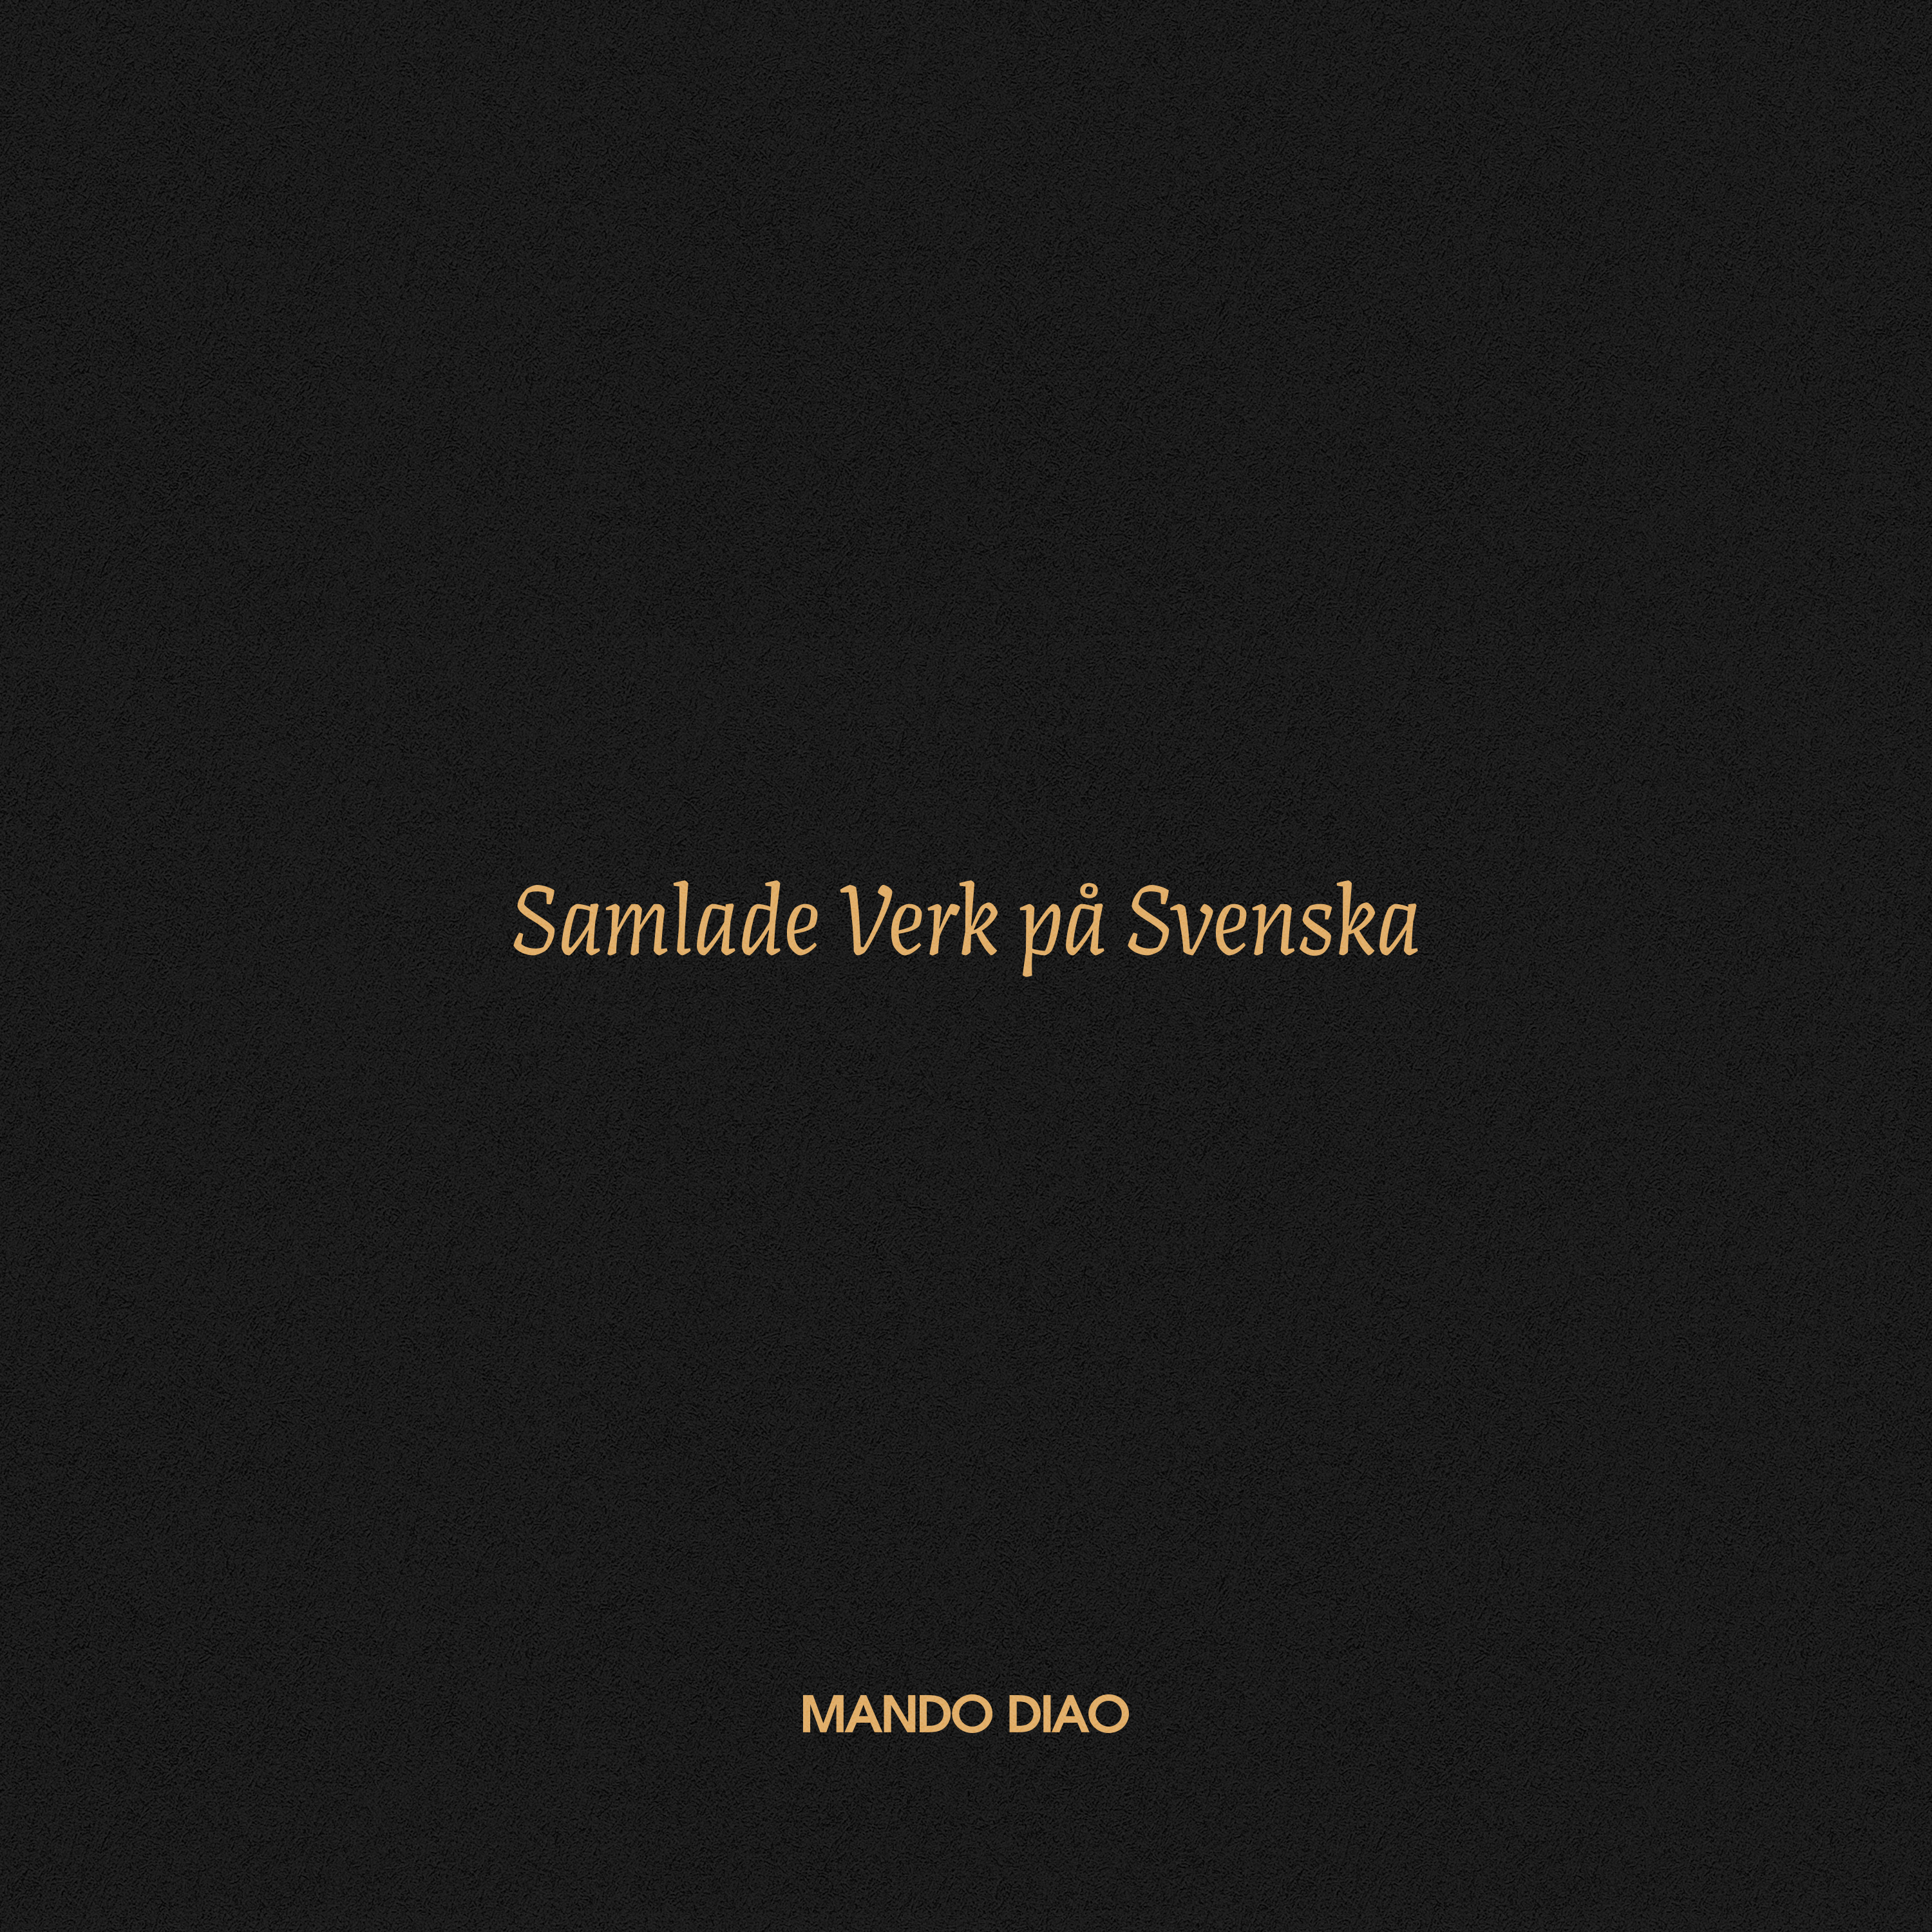 Mando Diao - Samlade verk p  svenska (4CD box + - 4xCD+BOOK